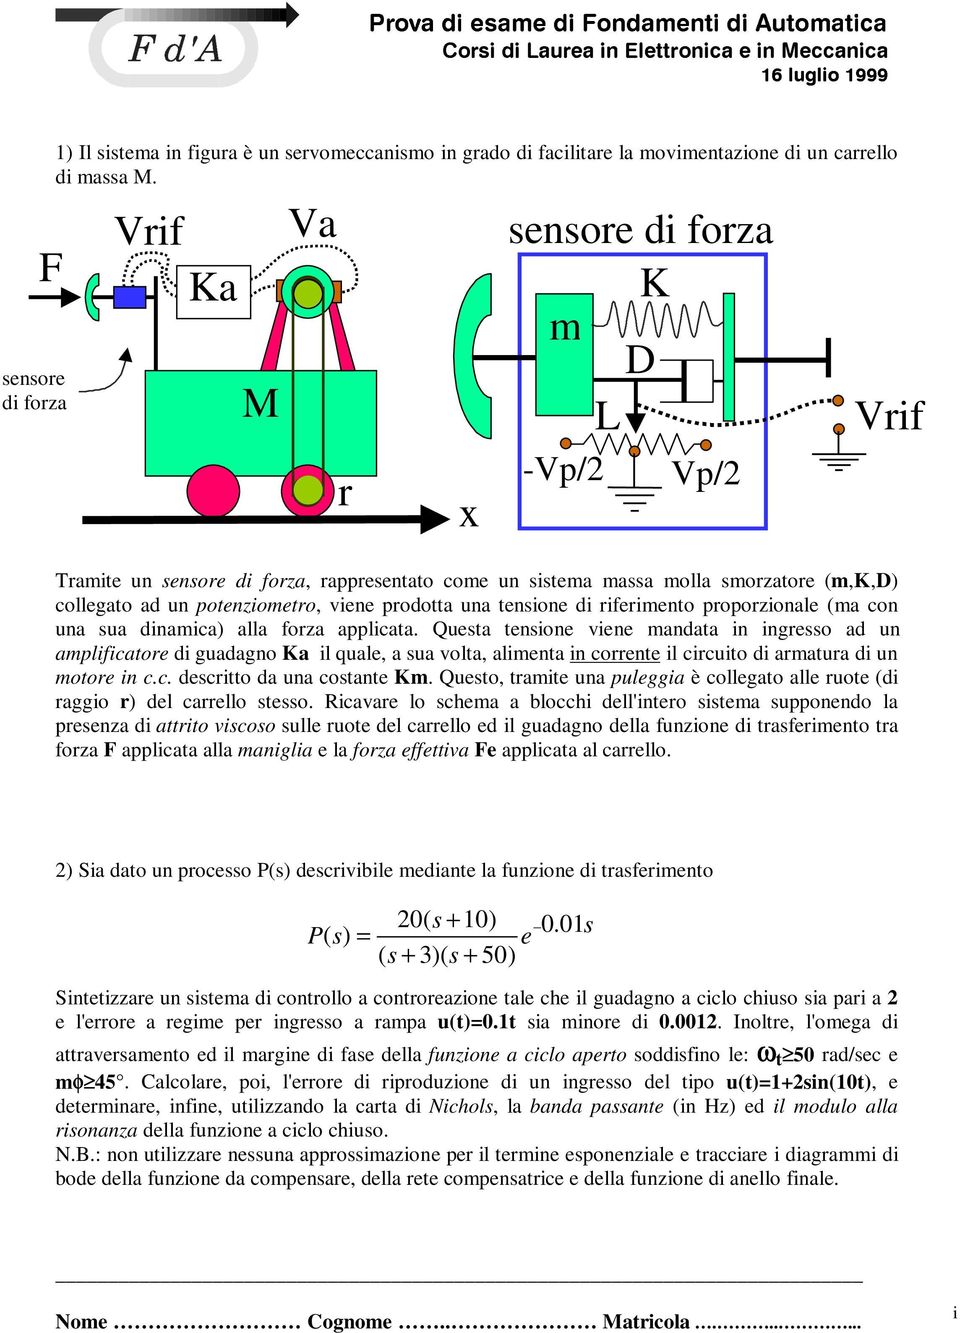 Vrif Ka M Va r x sensore di forza K m D L -Vp/ Vp/ Vrif Tramite un sensore di forza, rappresentato come un sistema massa molla smorzatore (m,k,d) collegato ad un potenziometro, viene prodotta una